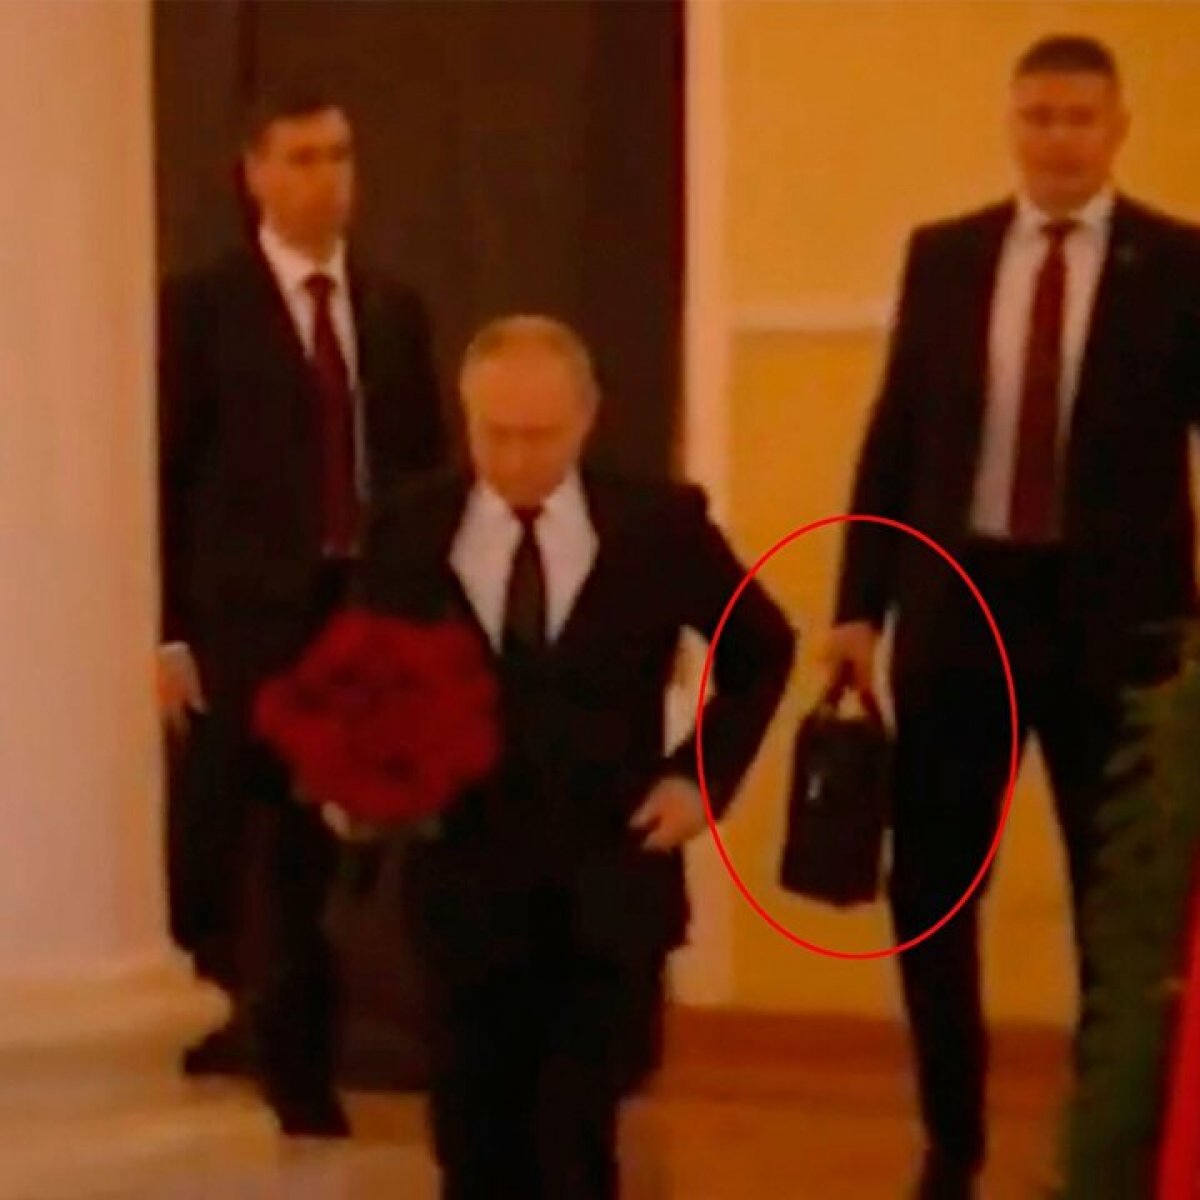 Vladimir Putin in nükleer çantasını taşıyan albay öldürüldü #1